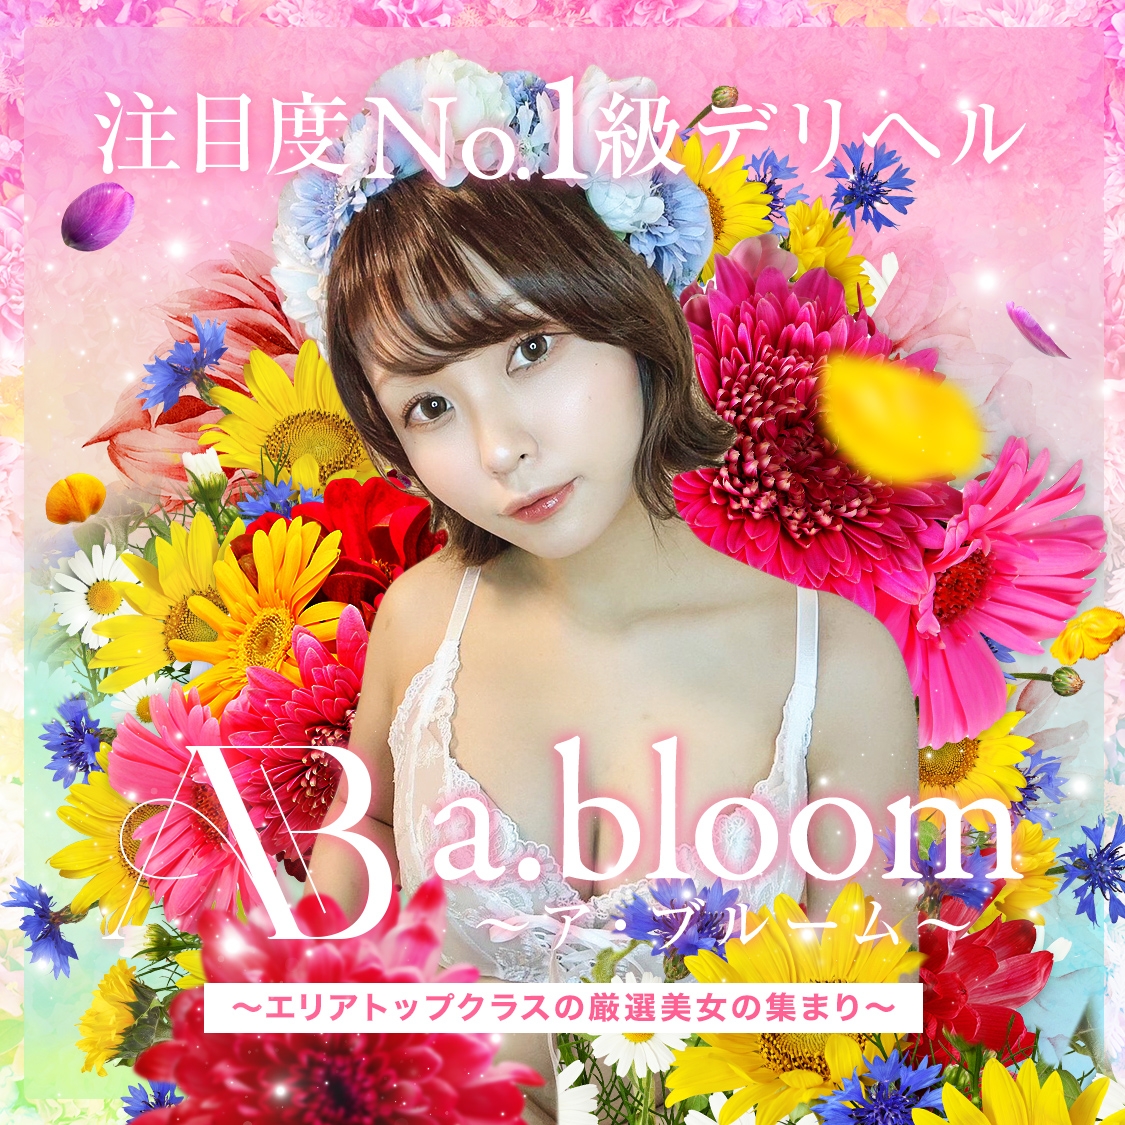 a･bloom〜ア・ブルーム〜